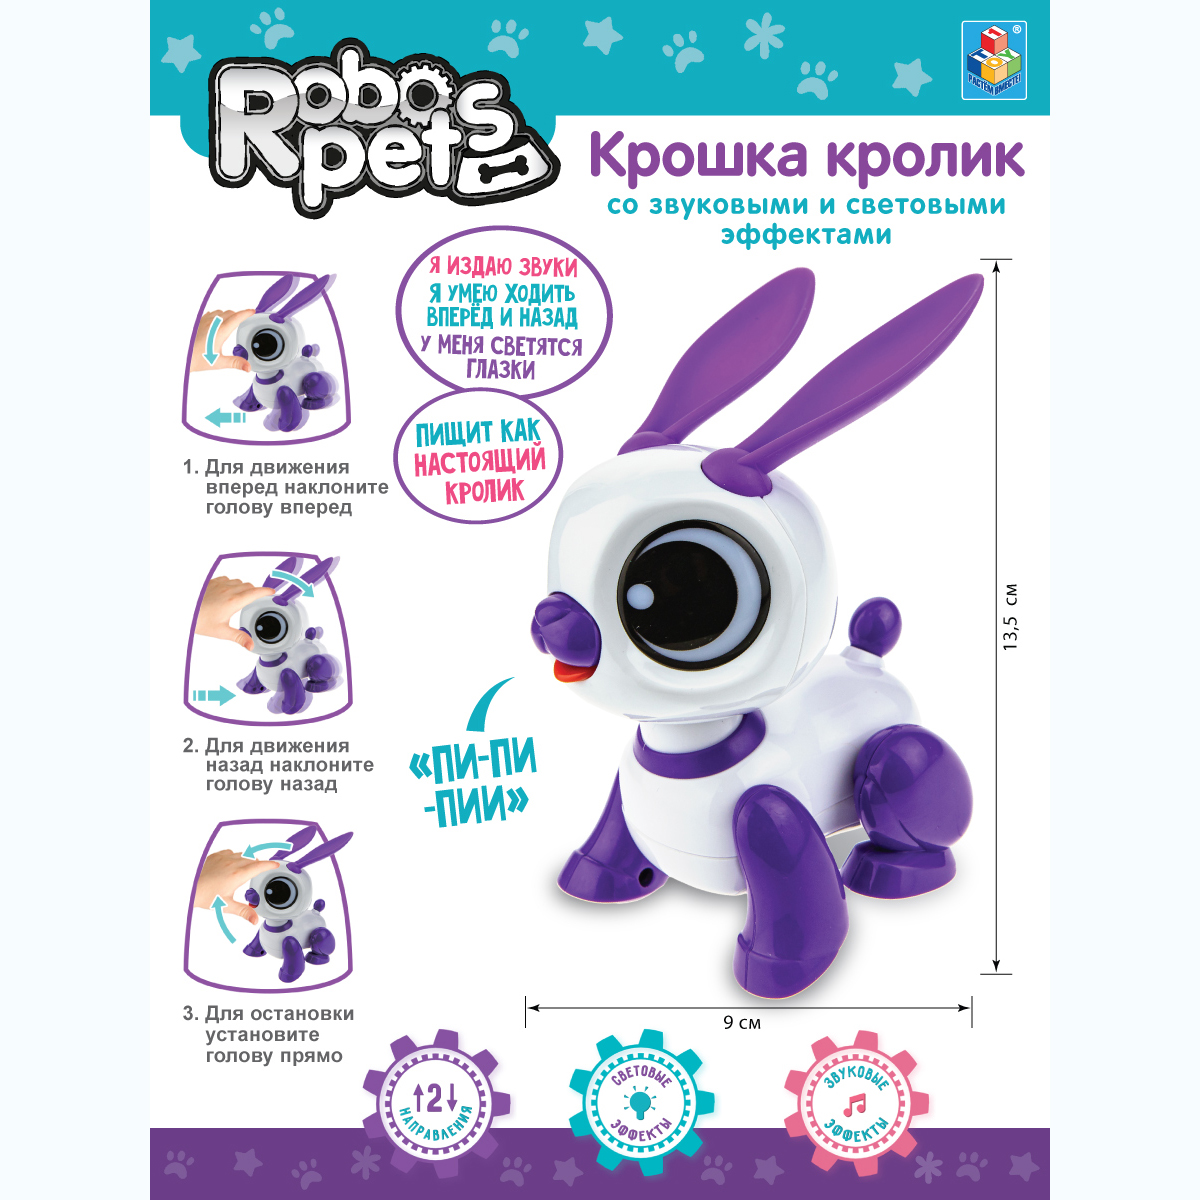 Интерактивная игрушка Robo Pets Кролик бело- фиолетовый со звуковыми световыми и эффектами движения - фото 3